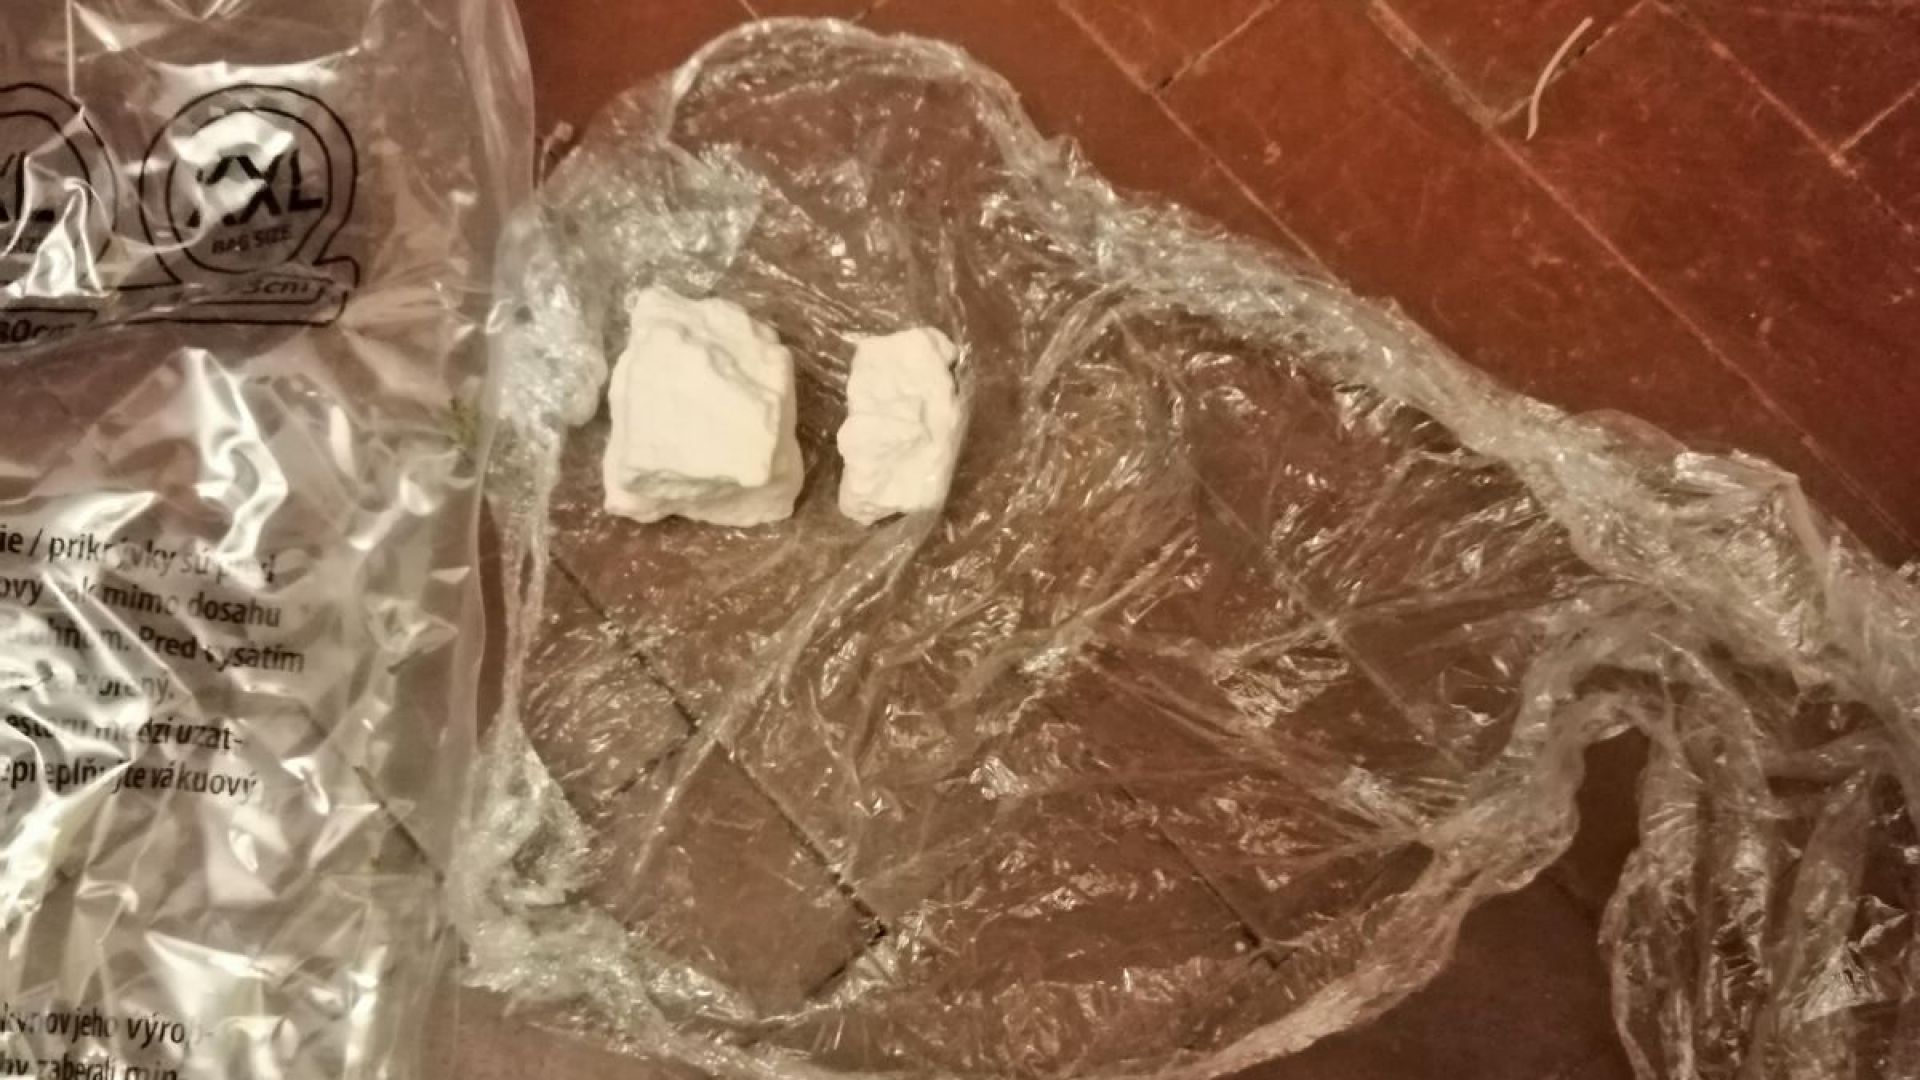 Откриха 2,5 кг канабис в жилище във Велико Търново (снимки)